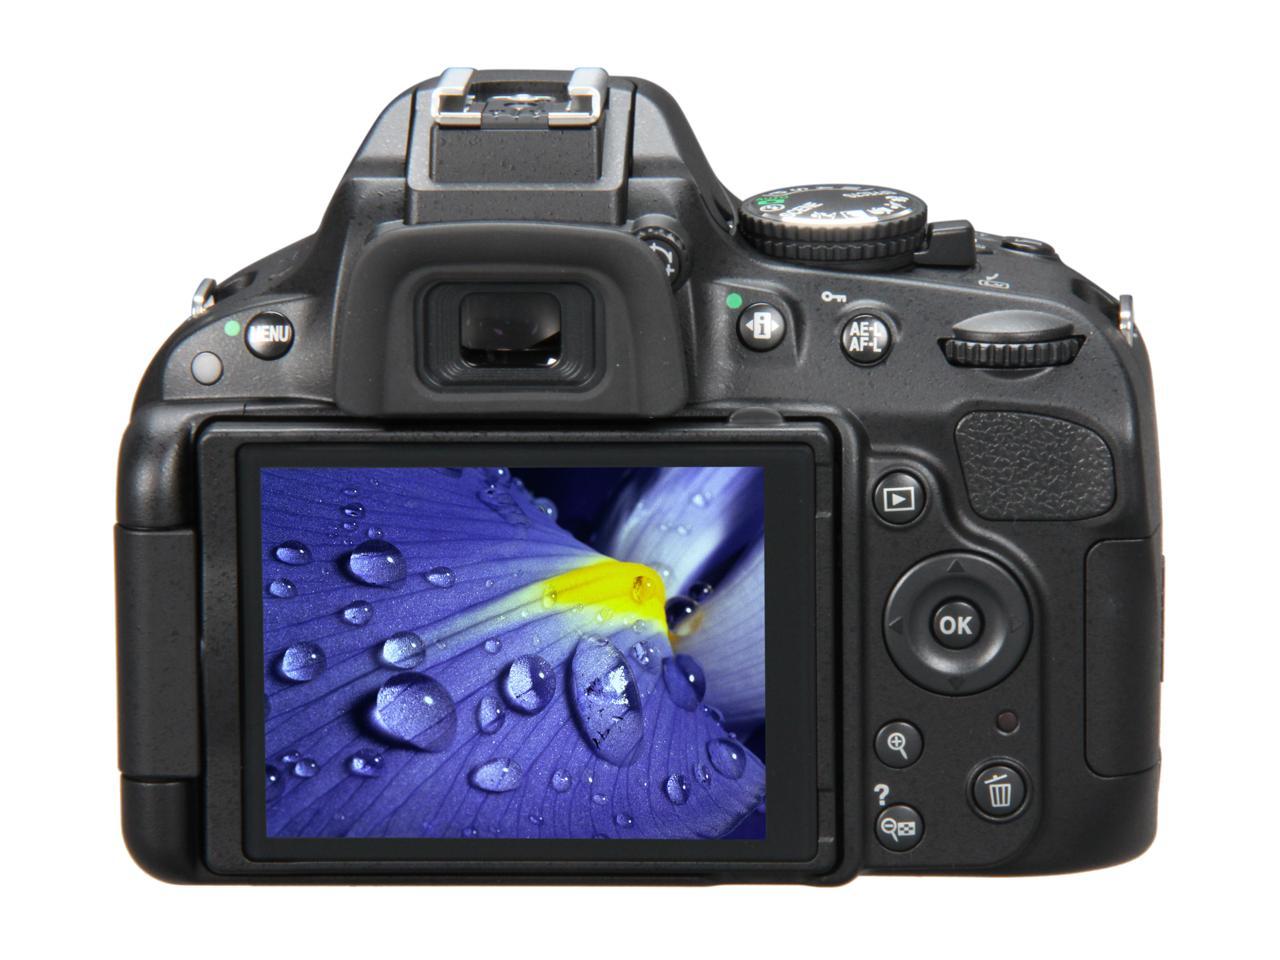 Nikon D5100 CMOS Digital SLR with 18-55mm f/3.5-5.6AF-S DX VR Nikkor